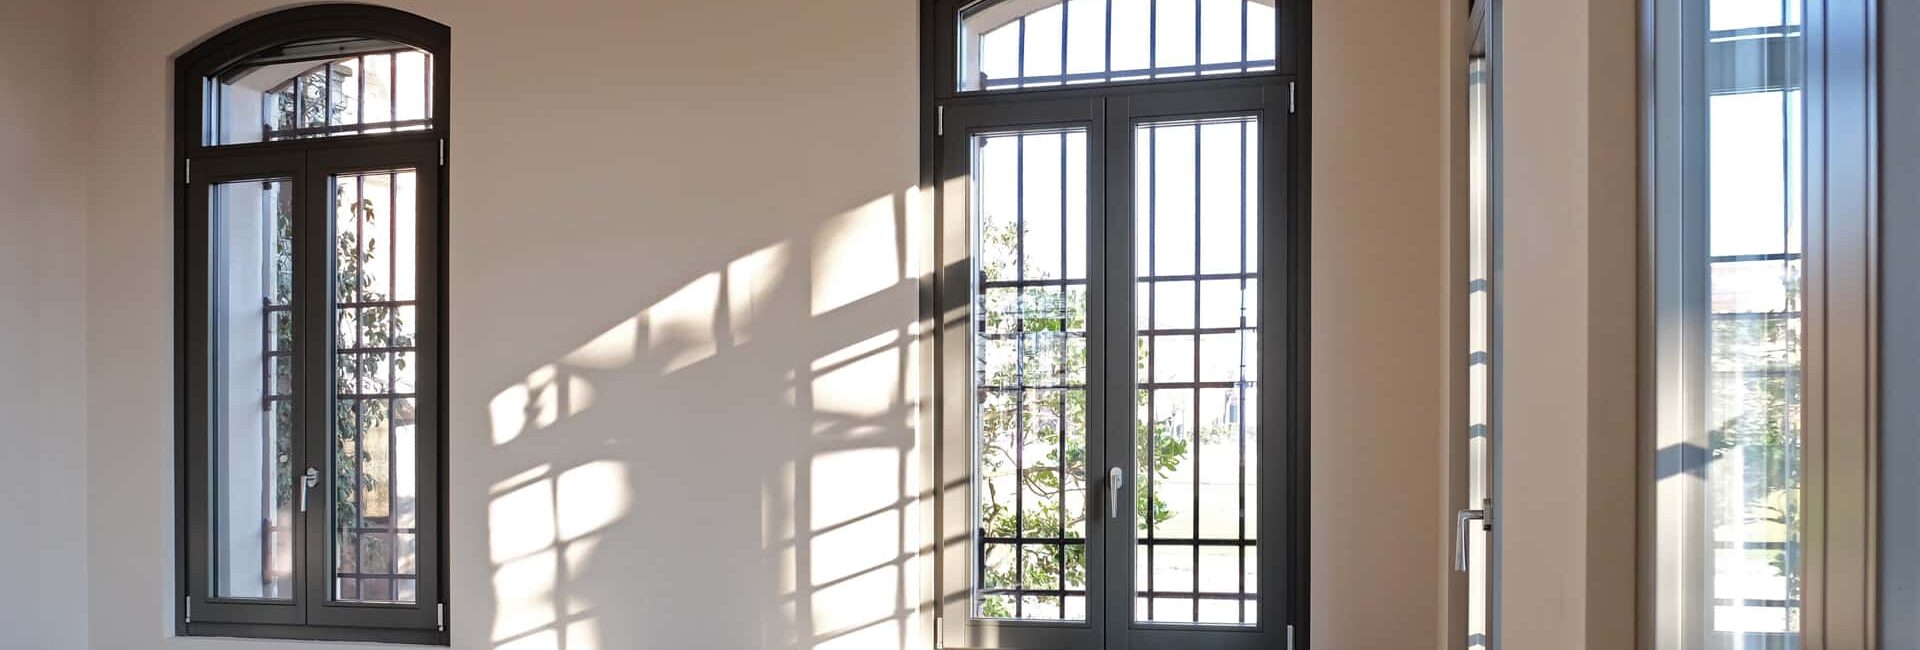 Installazione serramenti interni in legno, Portoncino ingresso e Porte interne Mantova 6